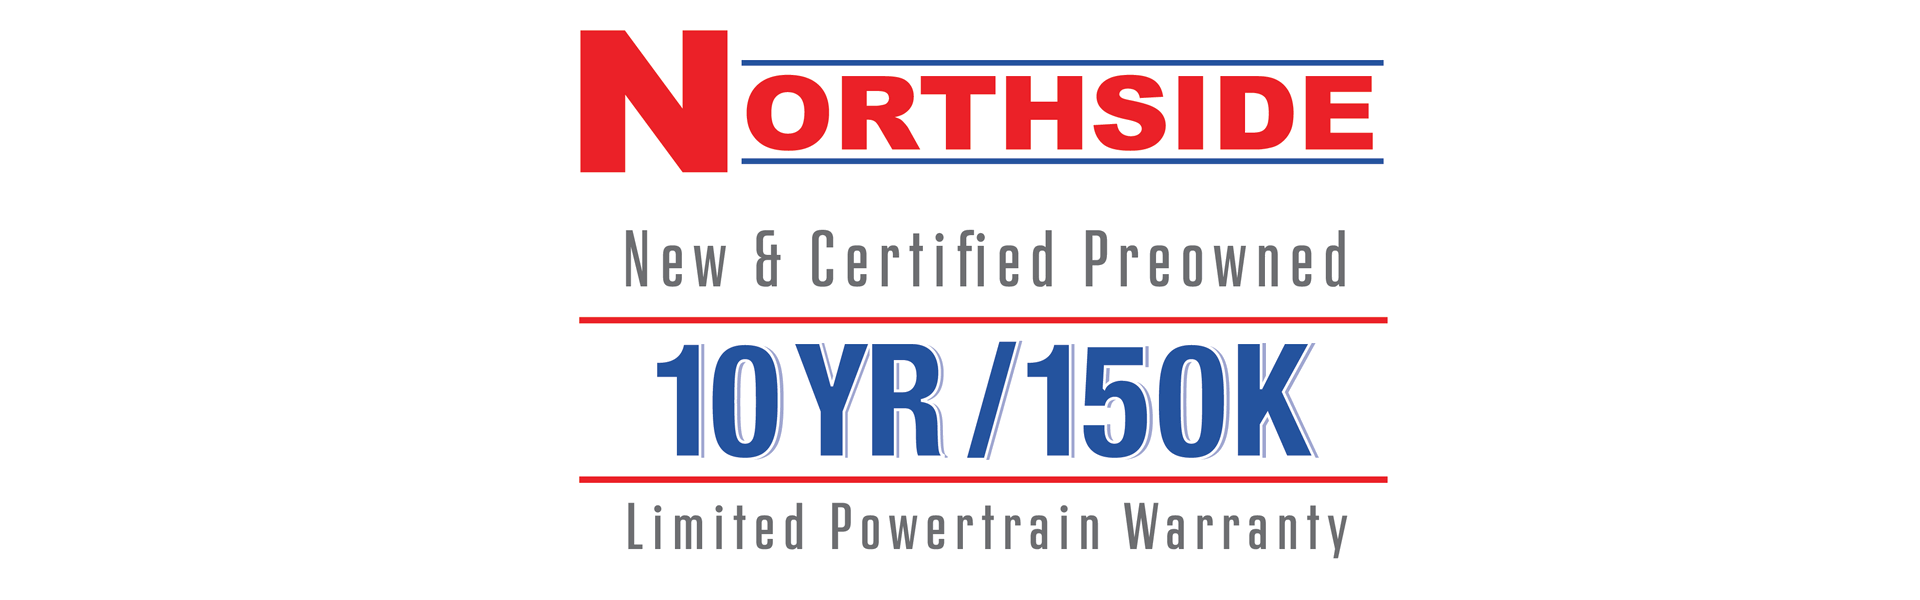 Northside Powertrain Warranty